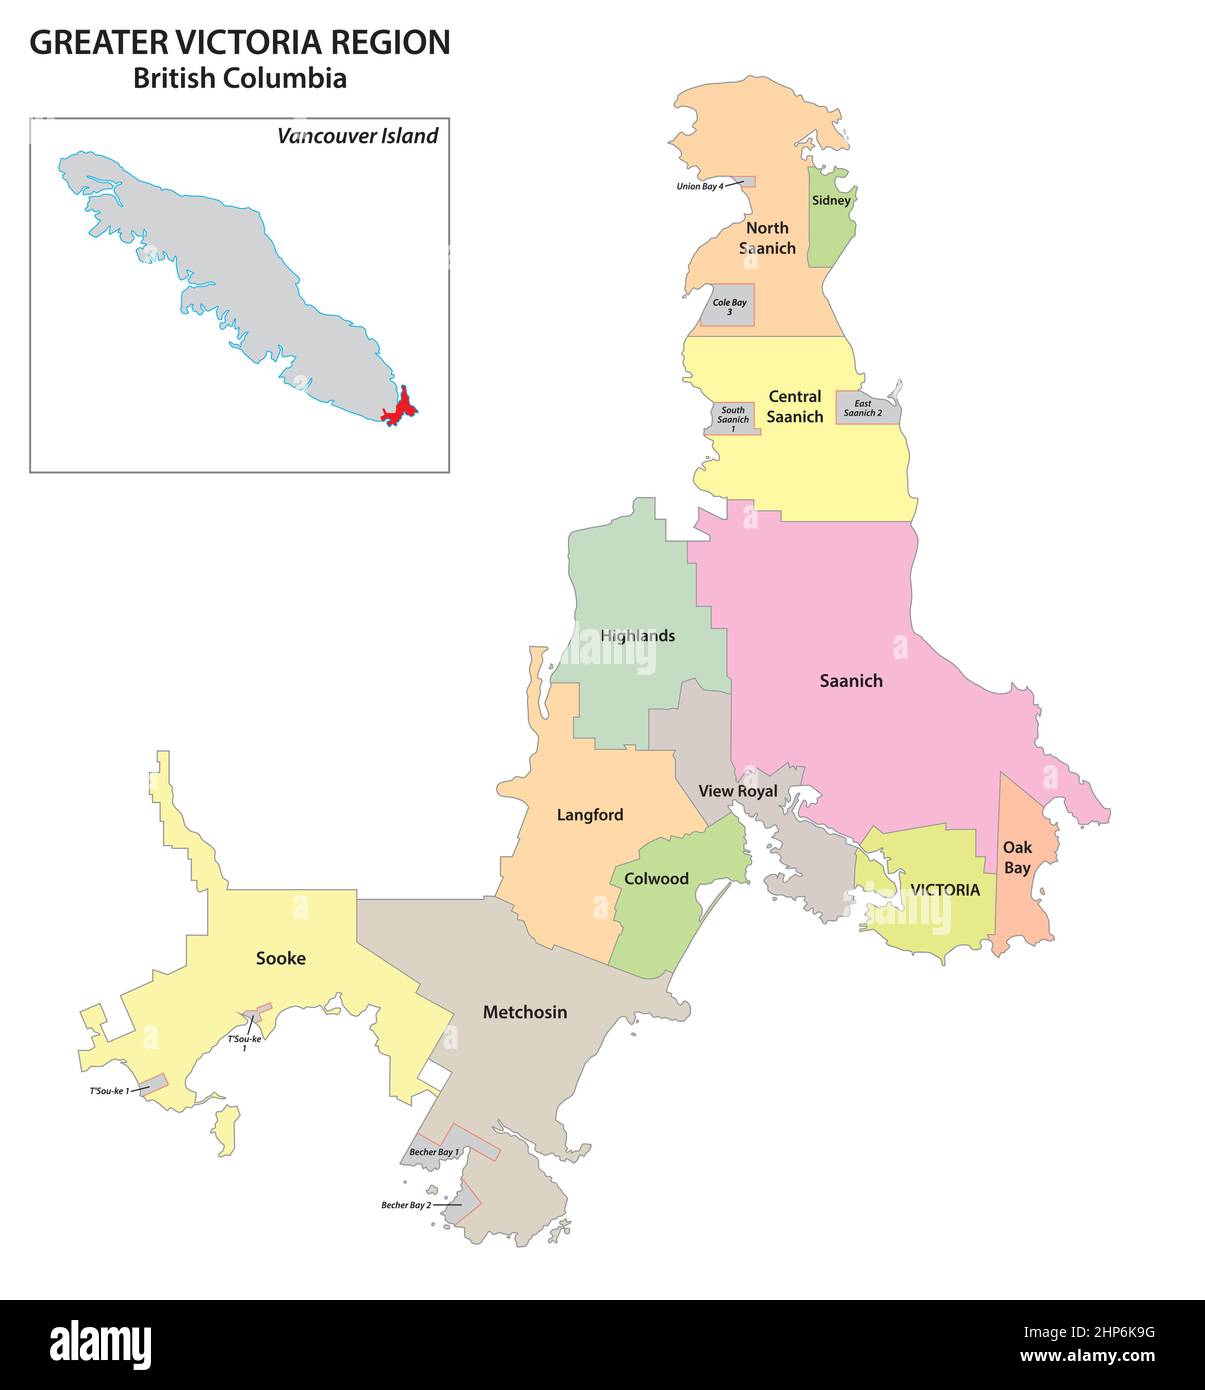 Mappa amministrativa della regione Greater Victoria, Vancouver Island, British Columbia, Canada Illustrazione Vettoriale